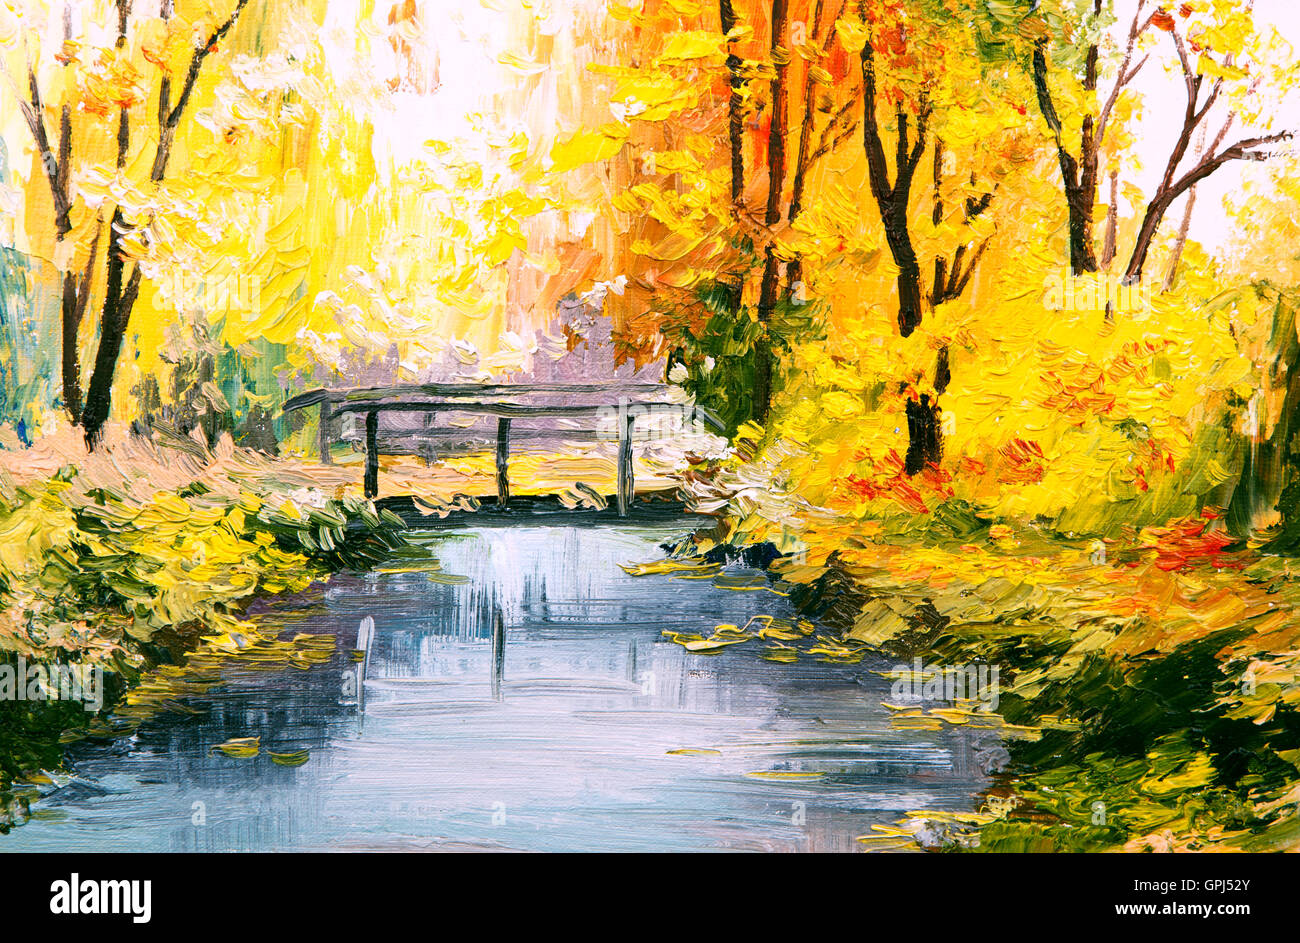 Peinture à l'huile paysage - forêt d'automne, belle rivière Banque D'Images